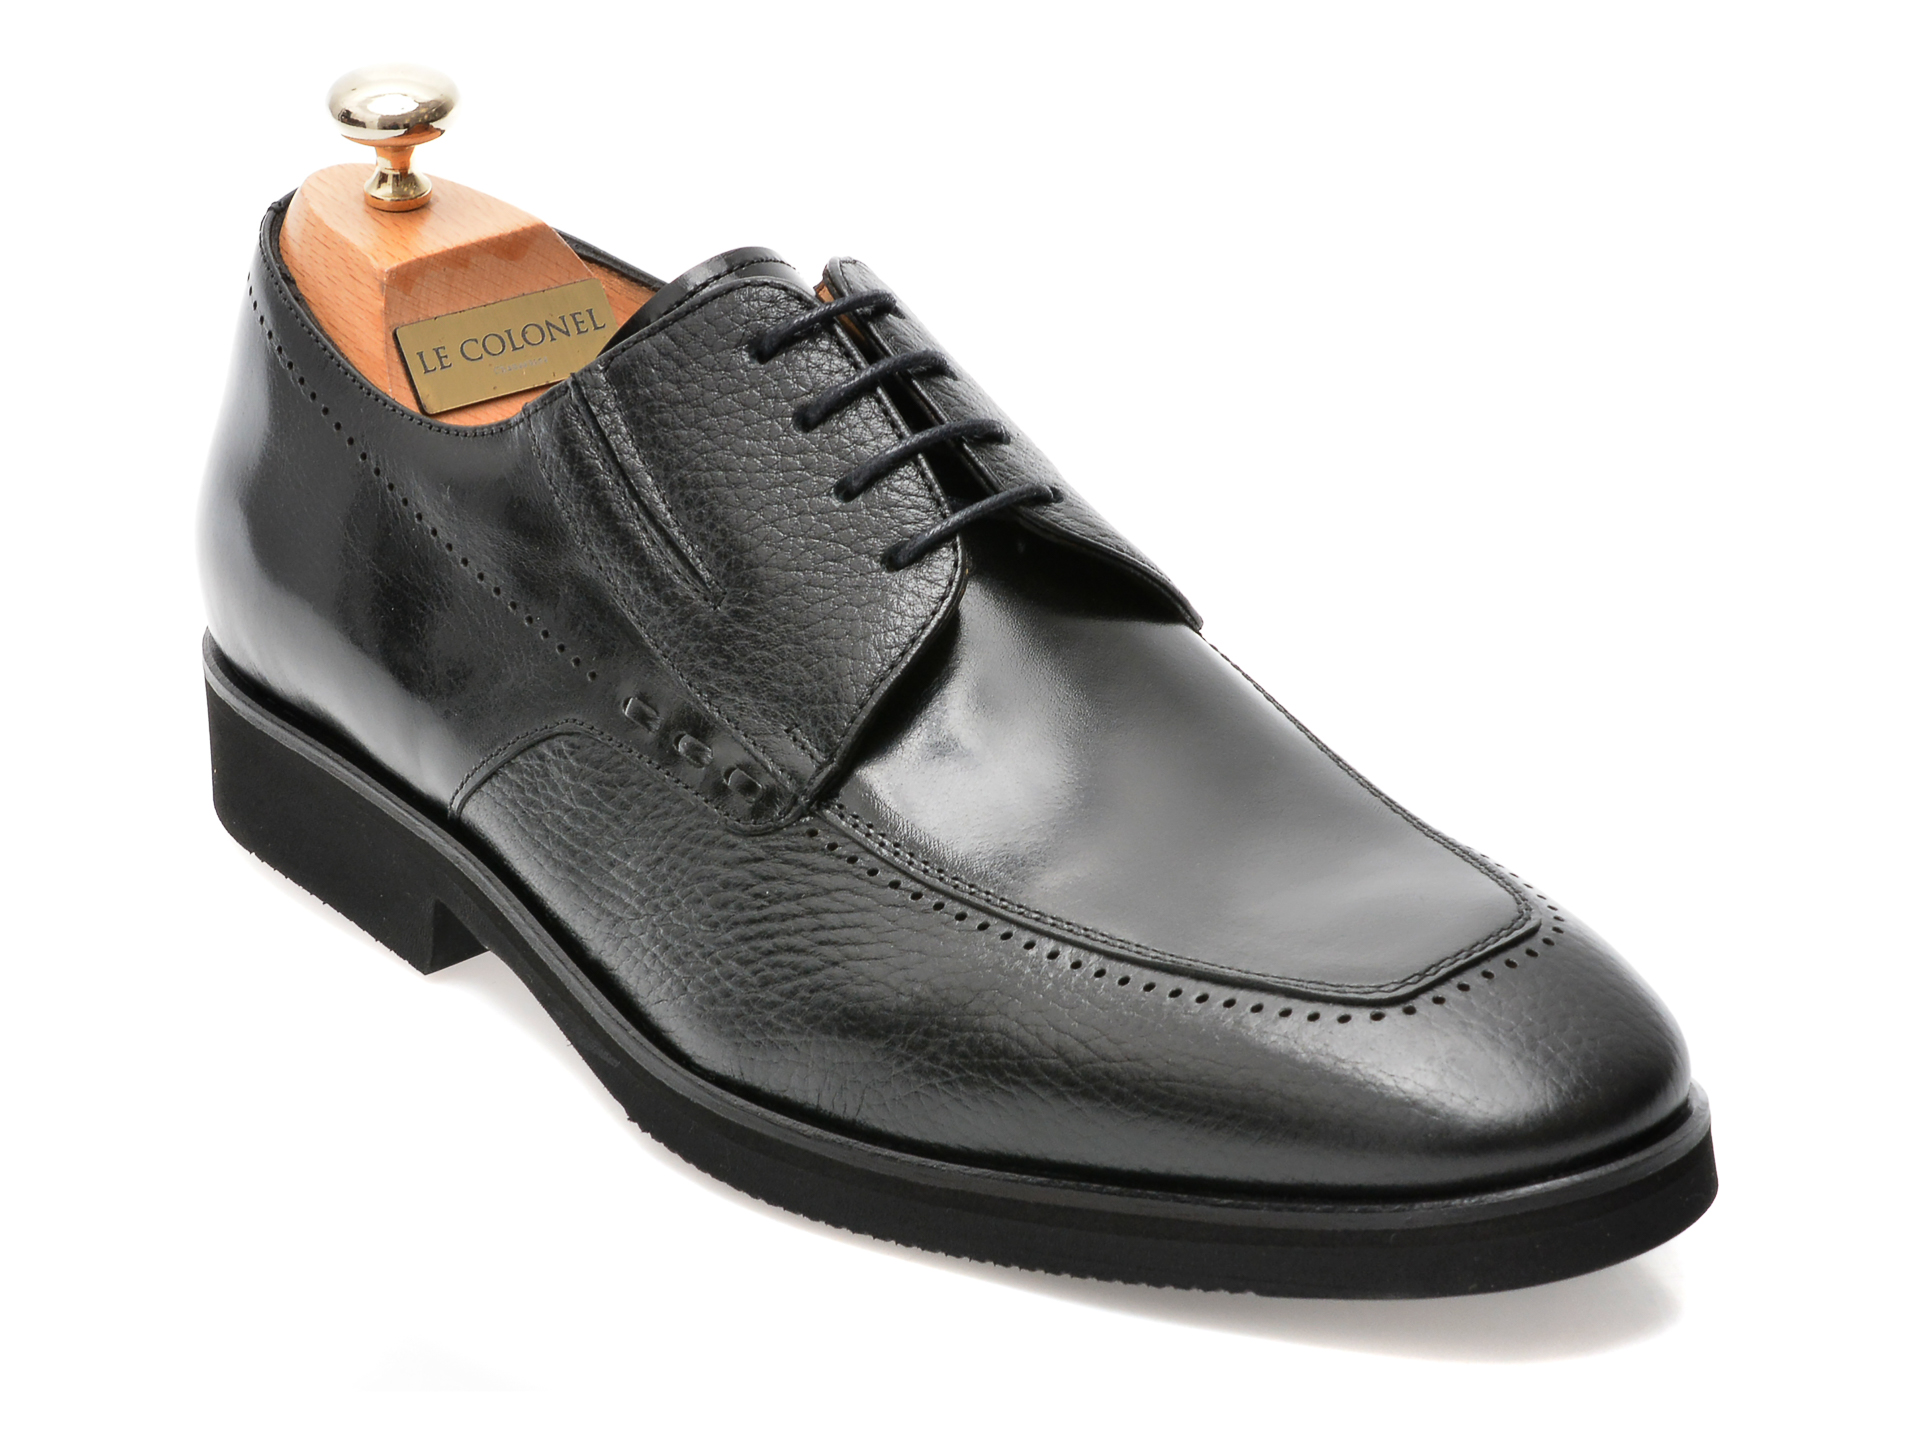 Pantofi LE COLONEL negri, 48701, din piele naturala barbati 2023-03-20